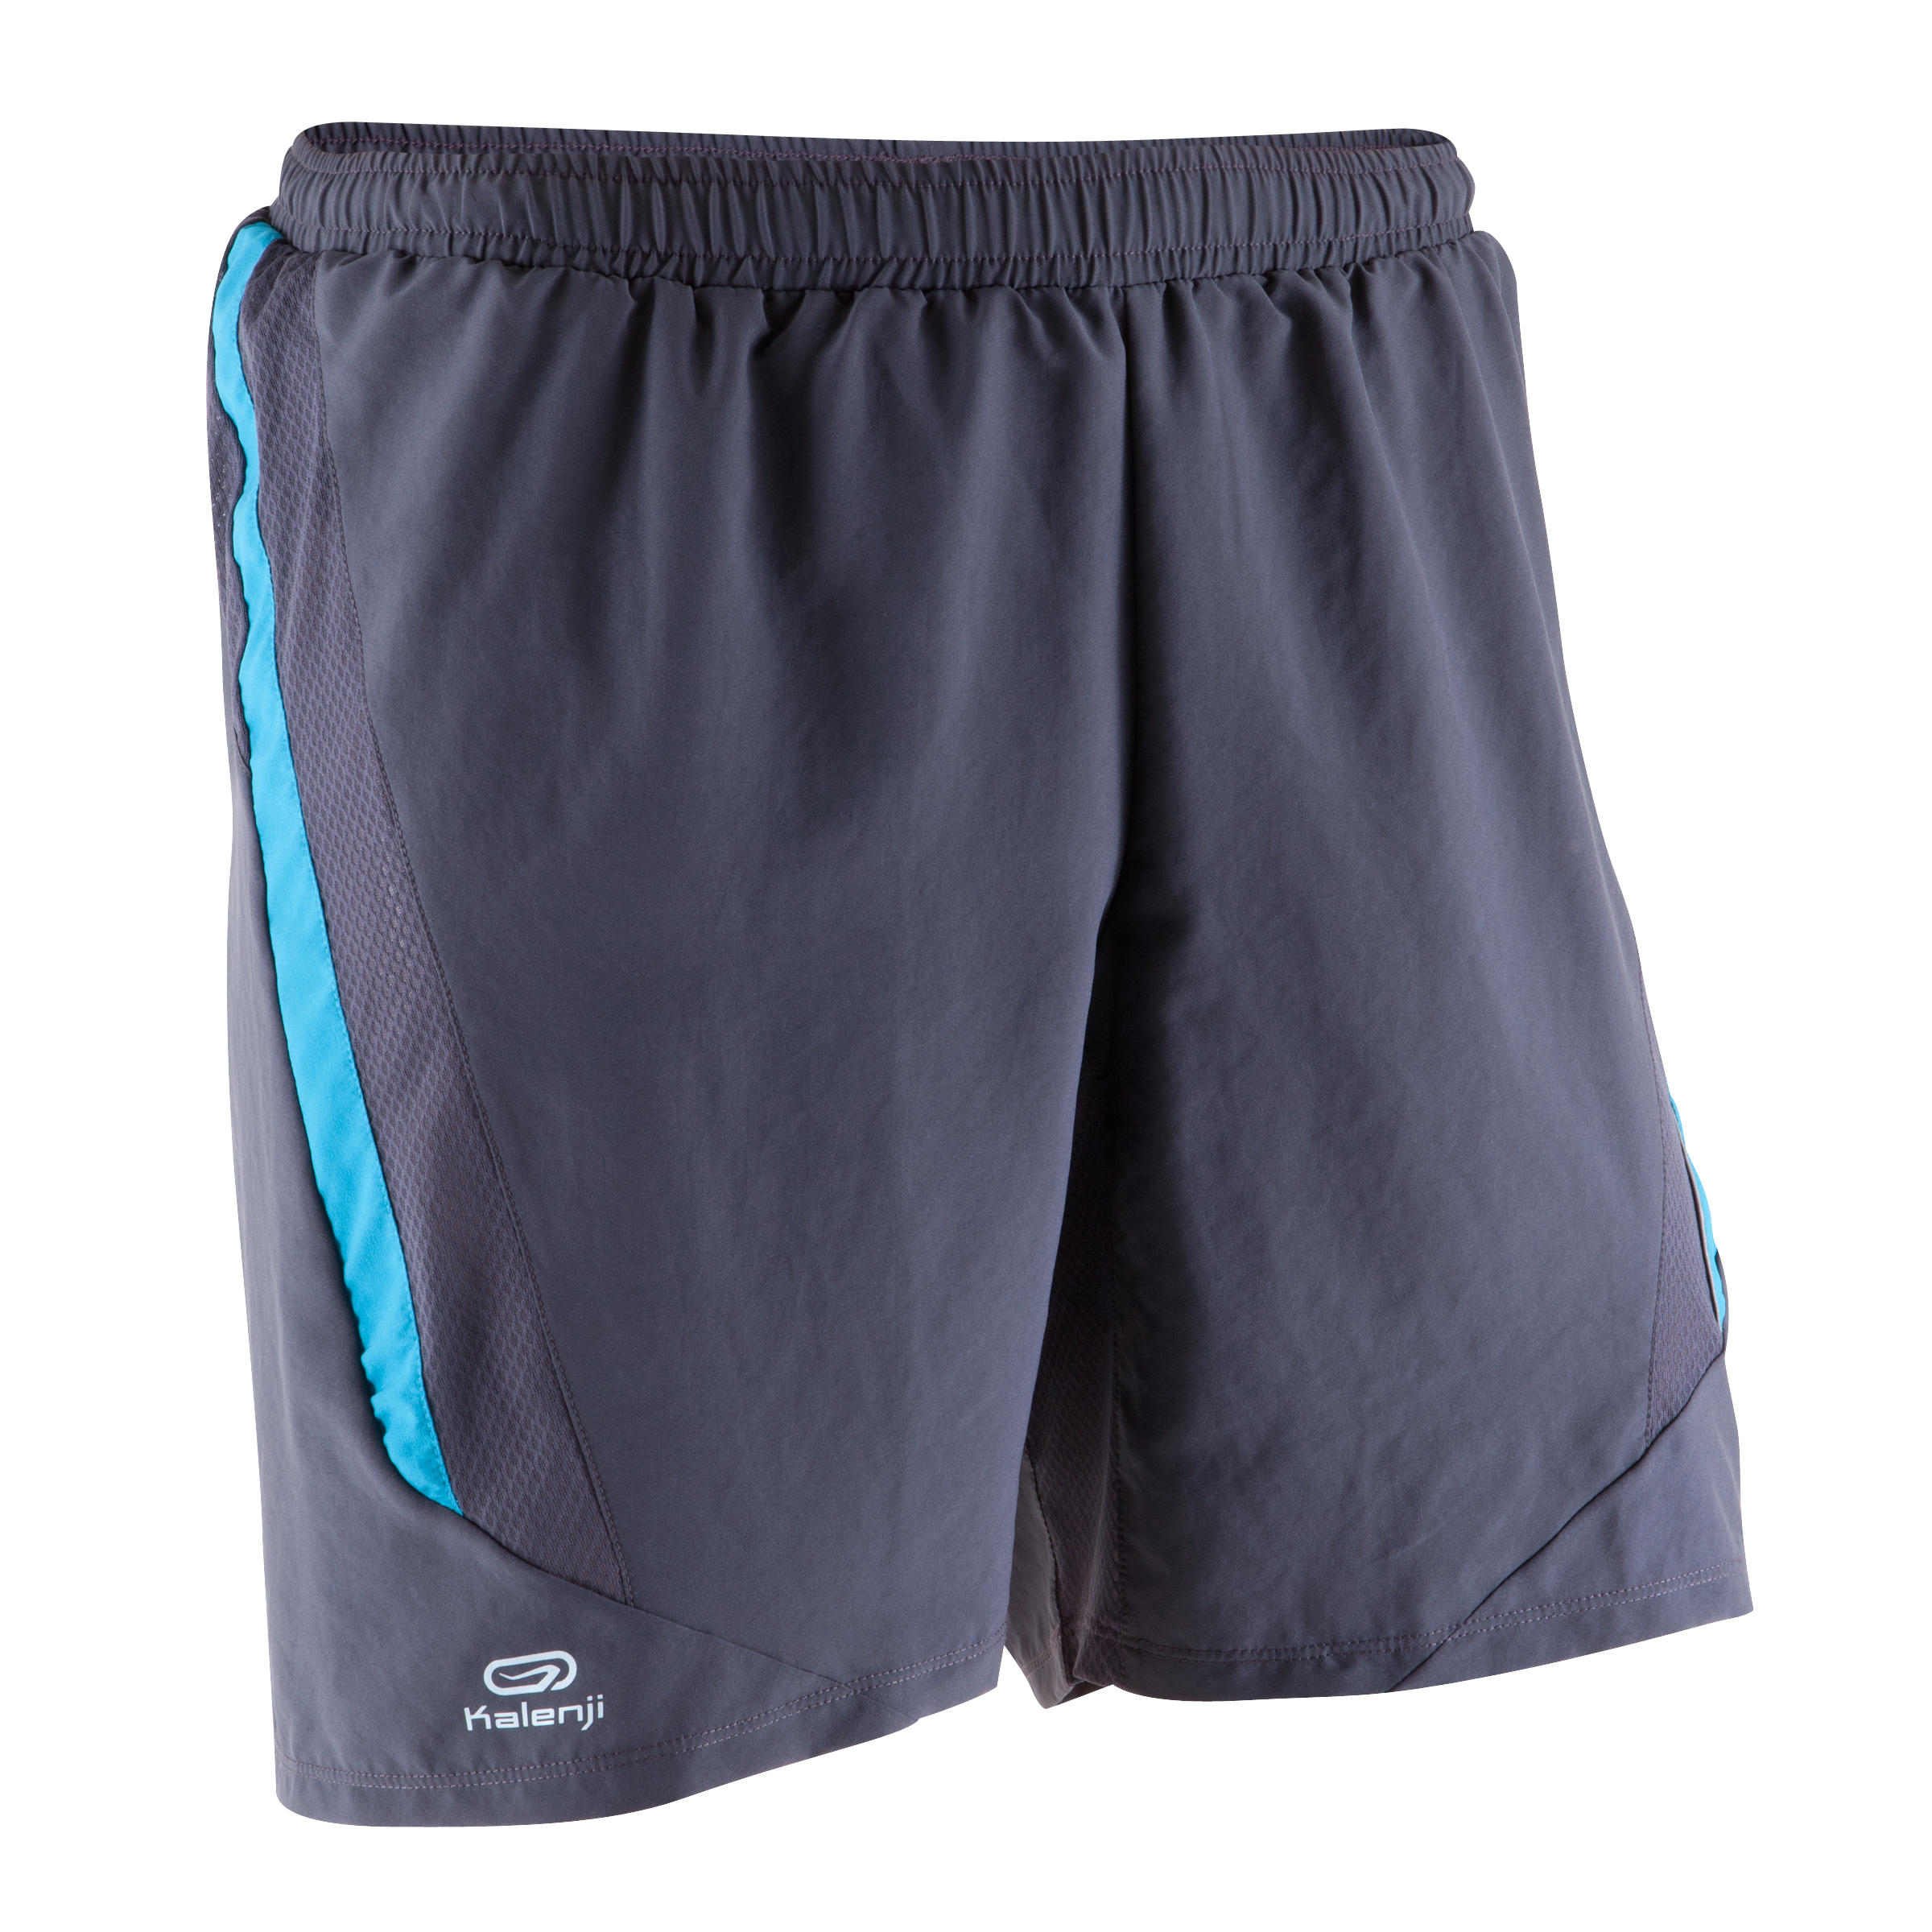 KALENJI Elio men's running shorts - grey/blue